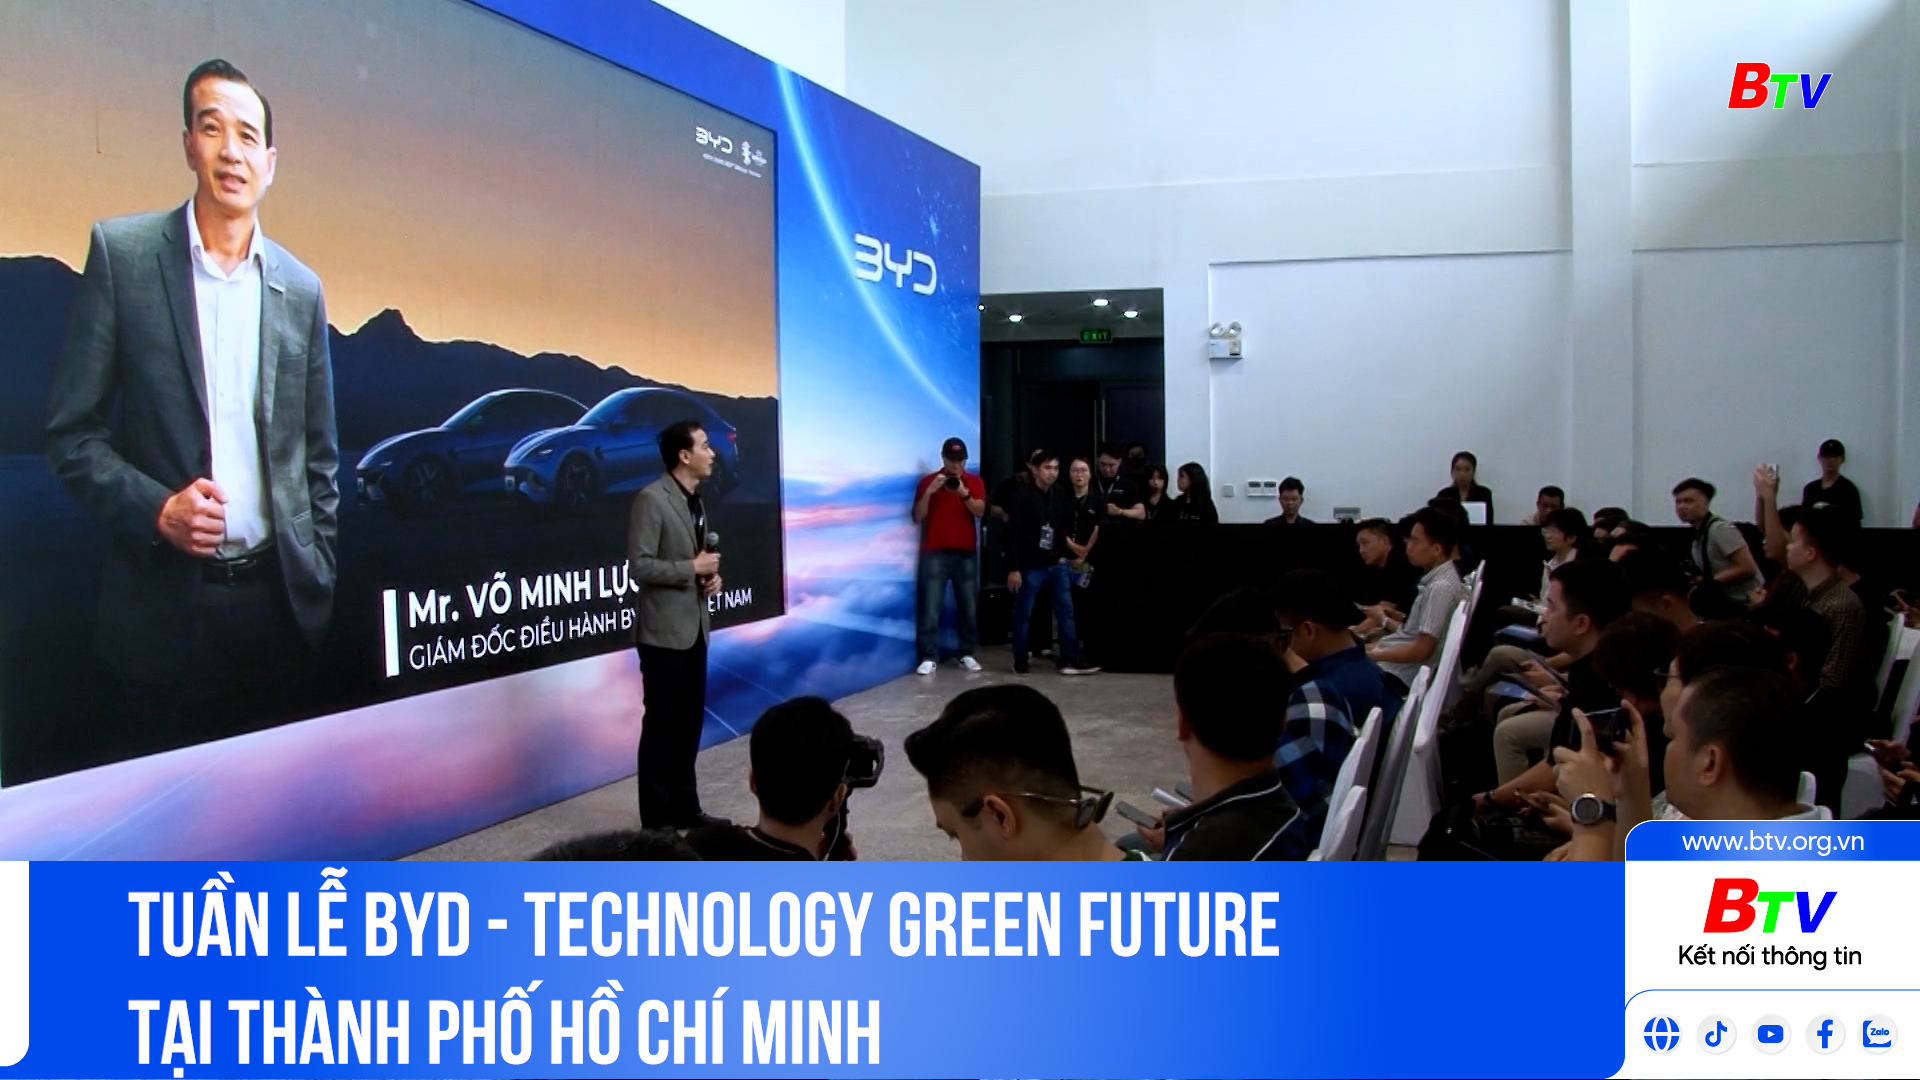 Tuần lễ BYD - TECHNOLOGY GREEN FUTURE tại Thành phố Hồ Chí Minh